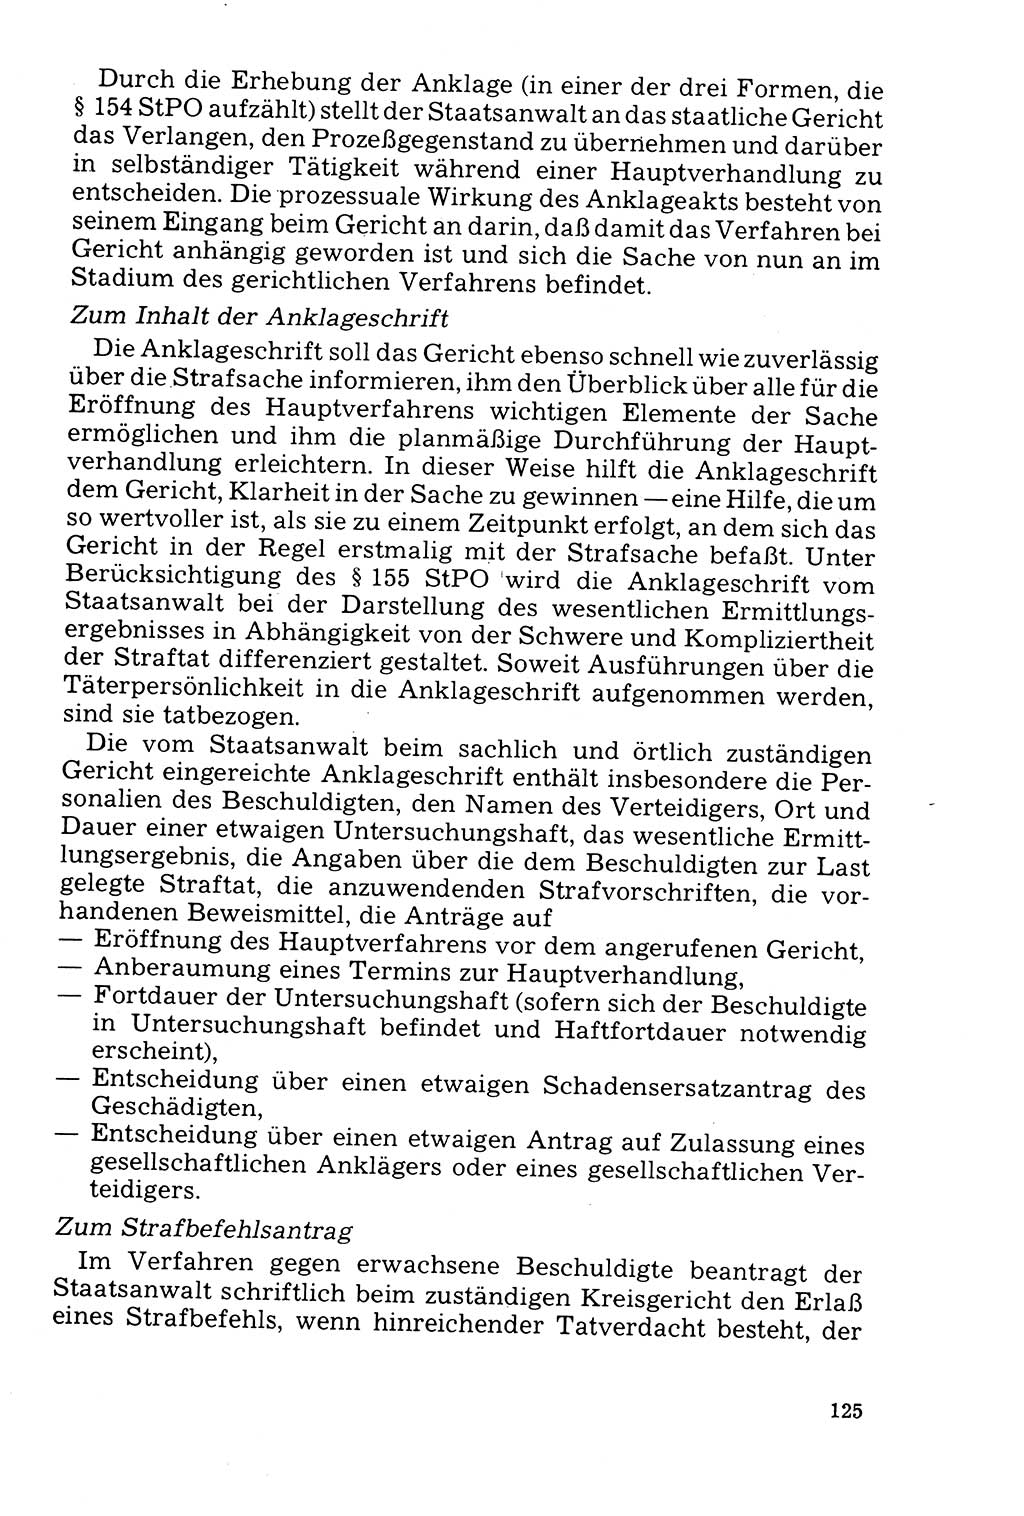 Der Abschluß des Ermittlungsverfahrens [Deutsche Demokratische Republik (DDR)] 1978, Seite 125 (Abschl. EV DDR 1978, S. 125)